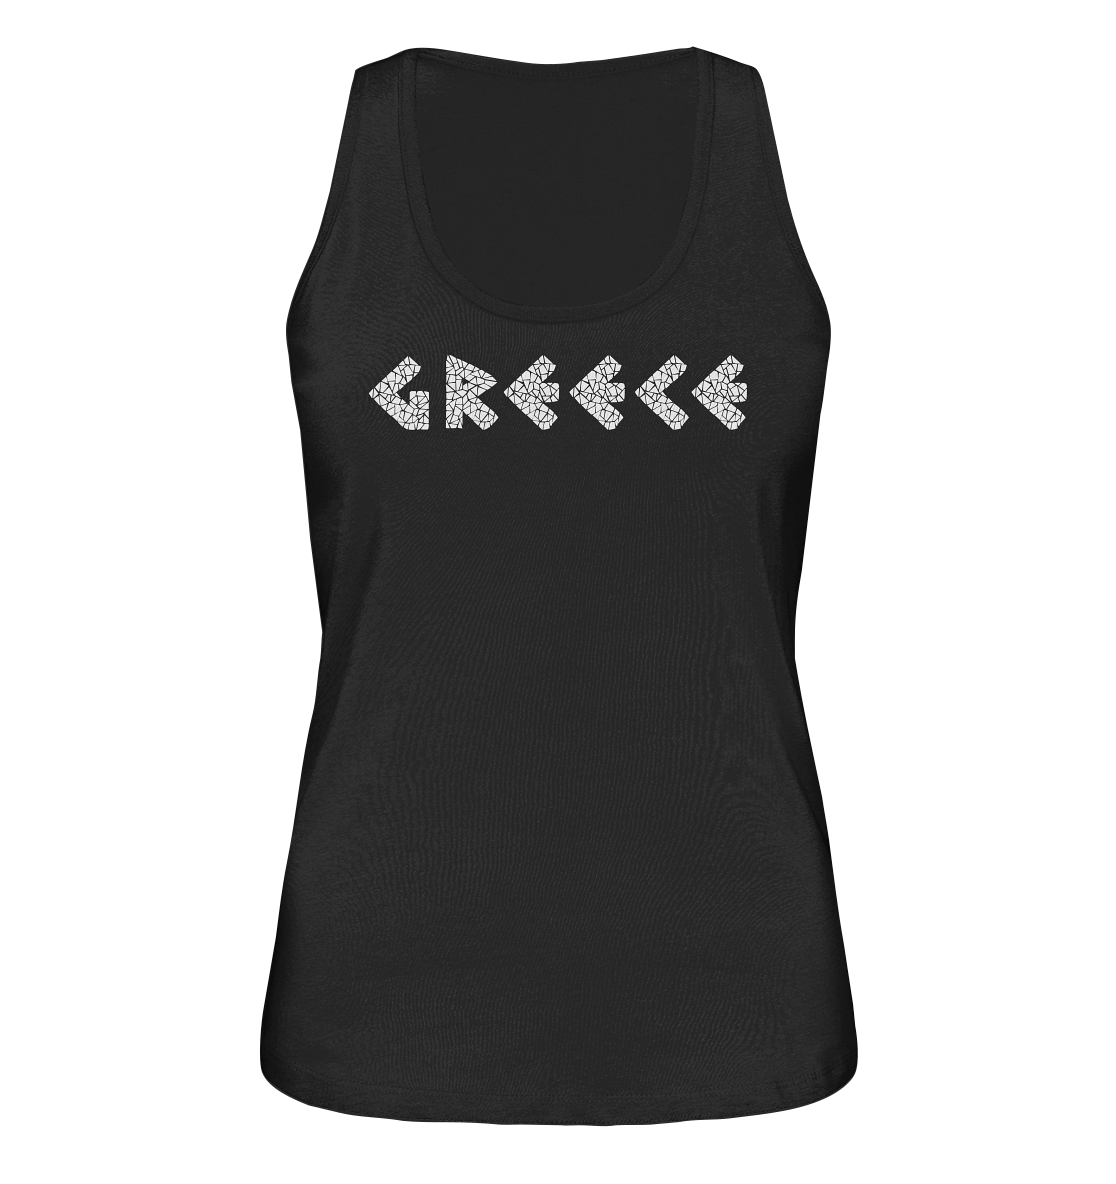 Greece Mosaic - Ladies Organic Tank Top